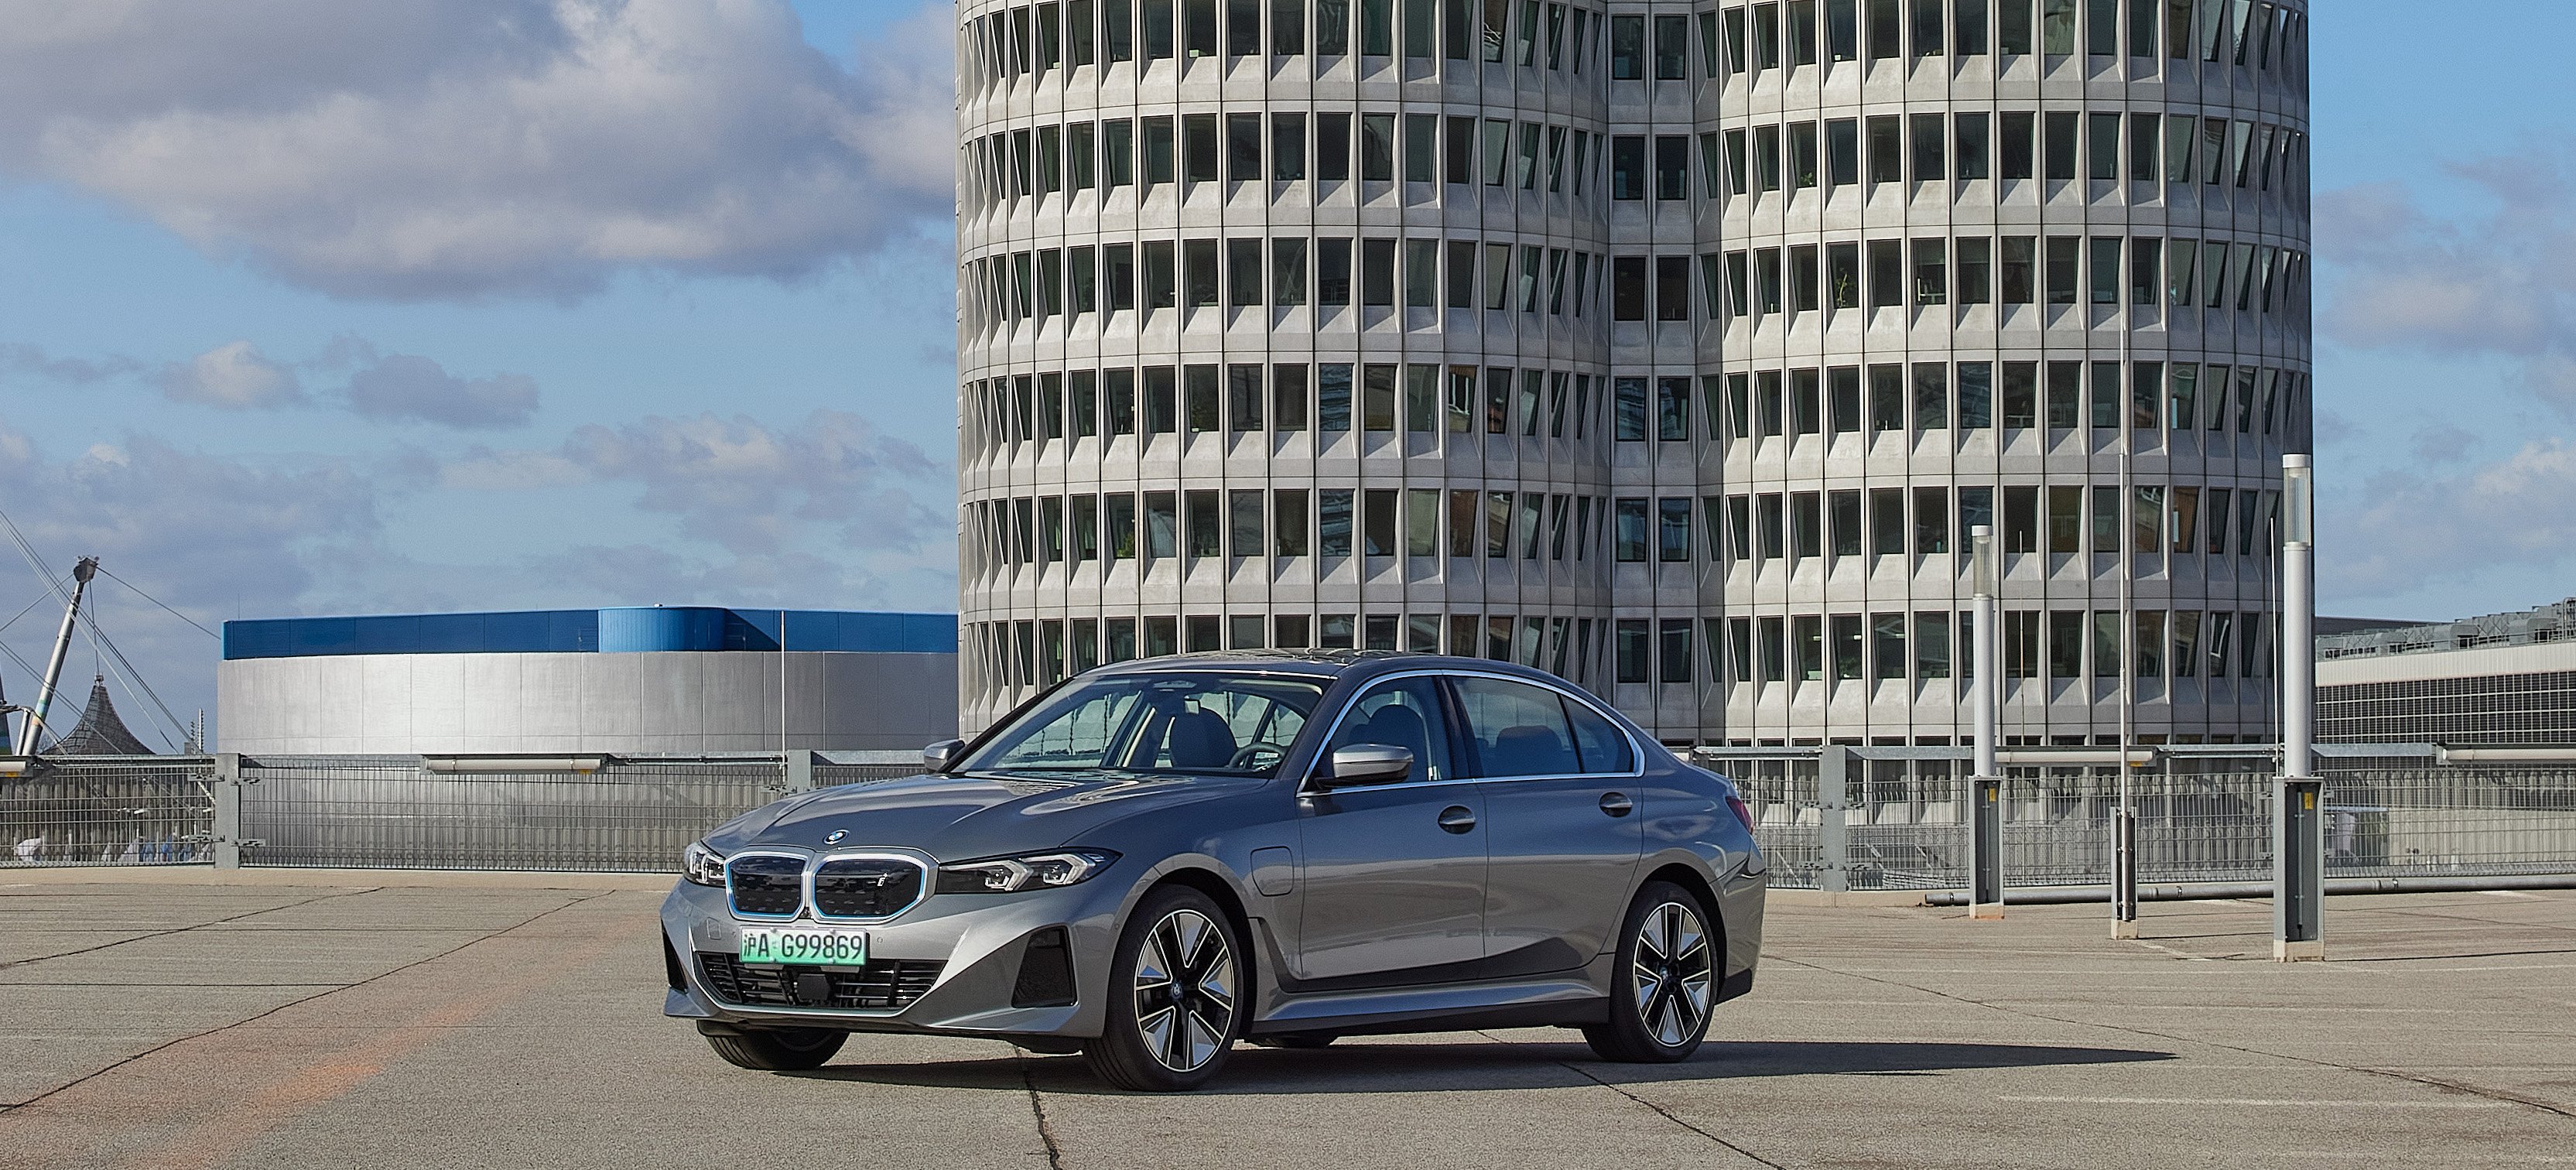 BMW i3: Dieses E-Auto war seiner Zeit zu weit voraus - WELT